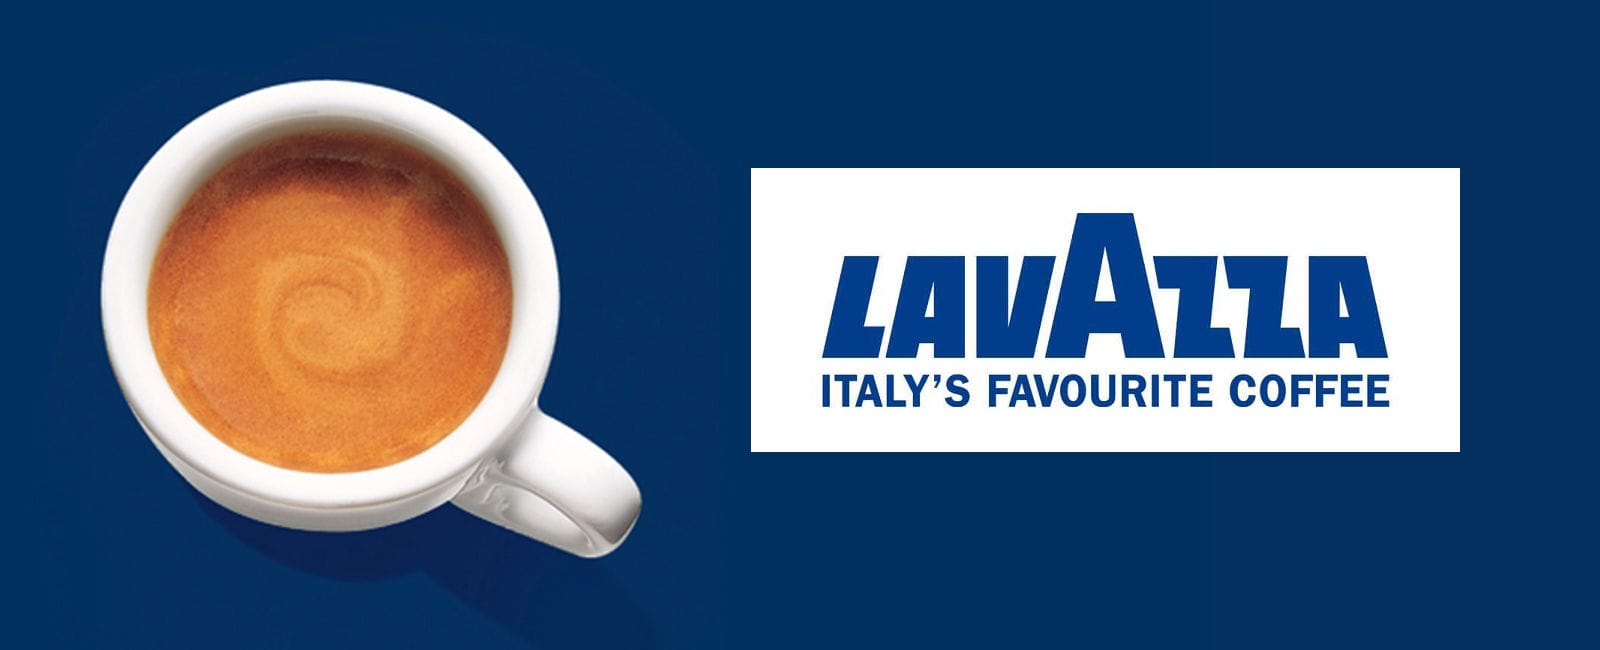 Итальянский кофе Lavazza